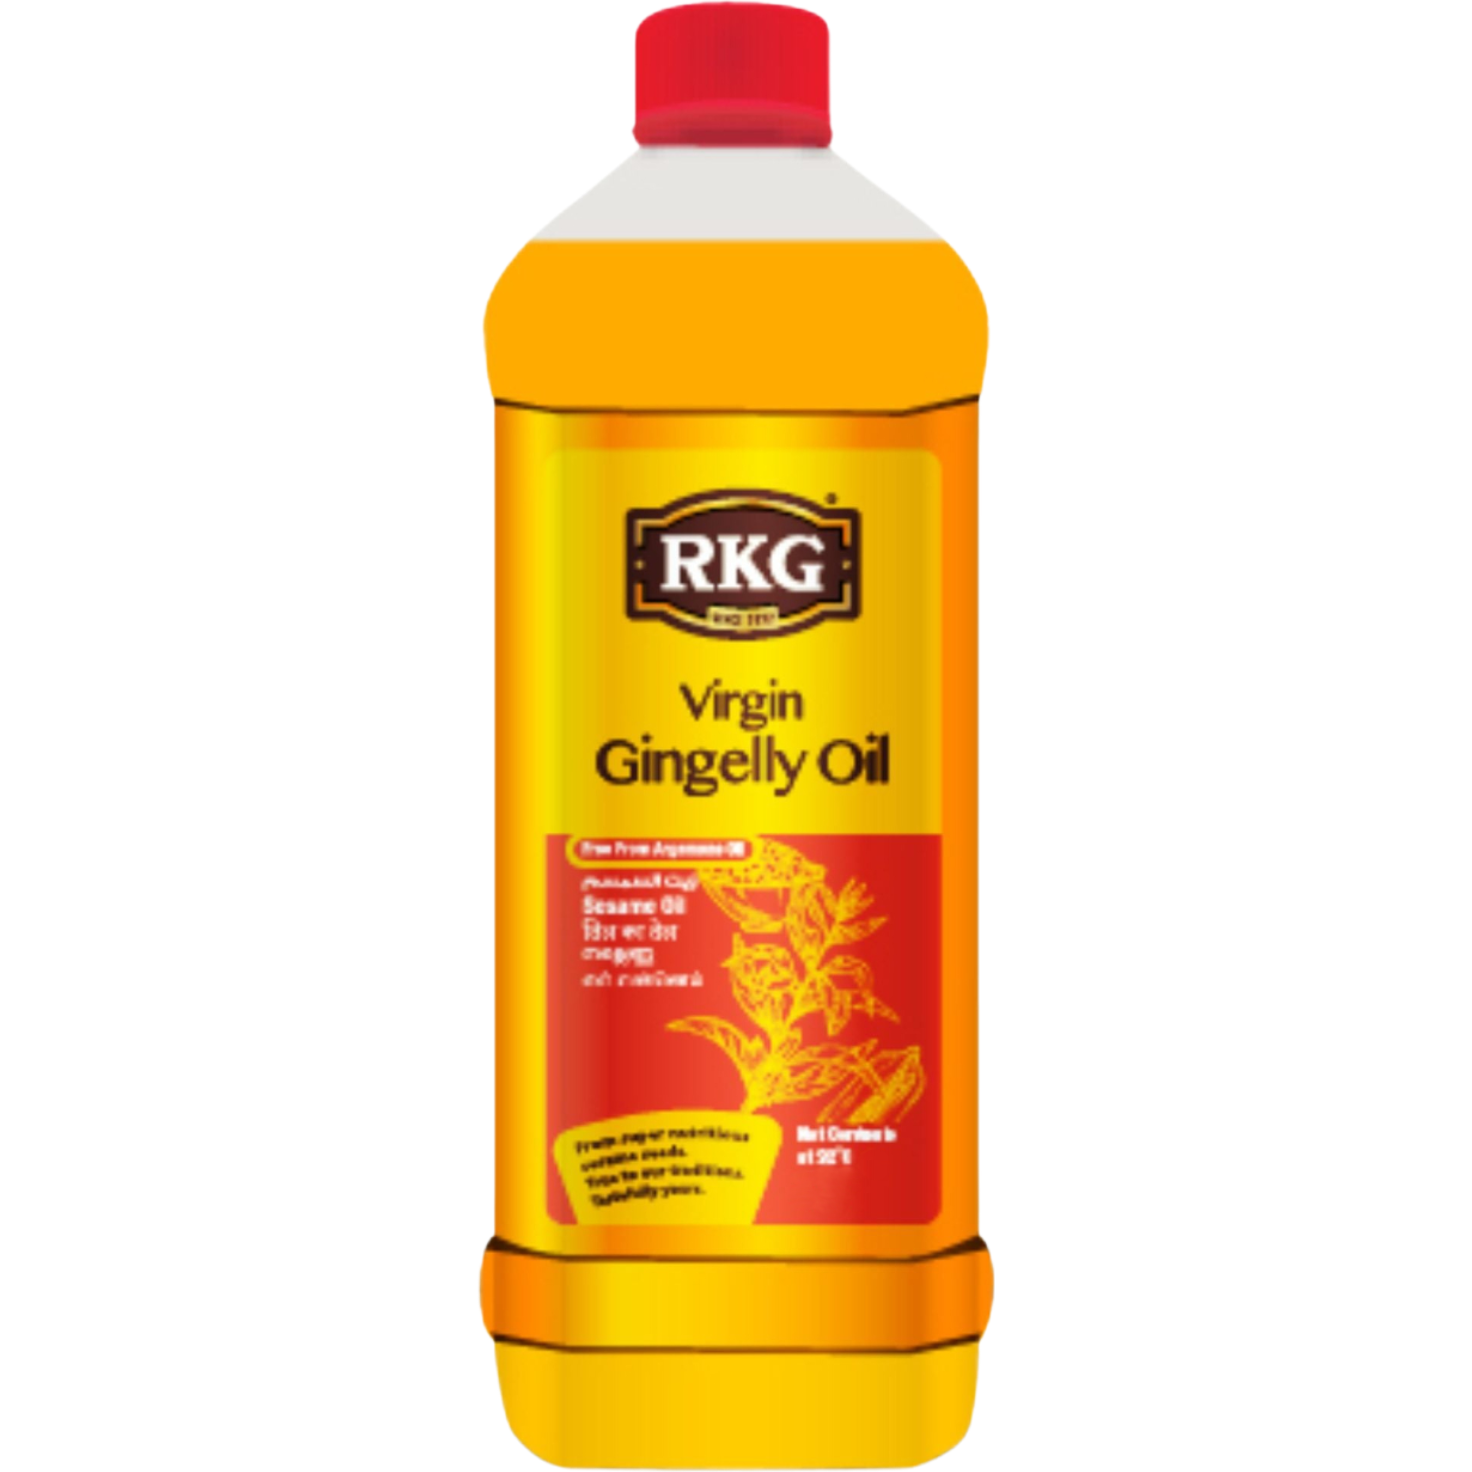 Pack of 3 - Rkg Virgin Gingelly Sesame Oil - 2 L (33 Fl Oz)